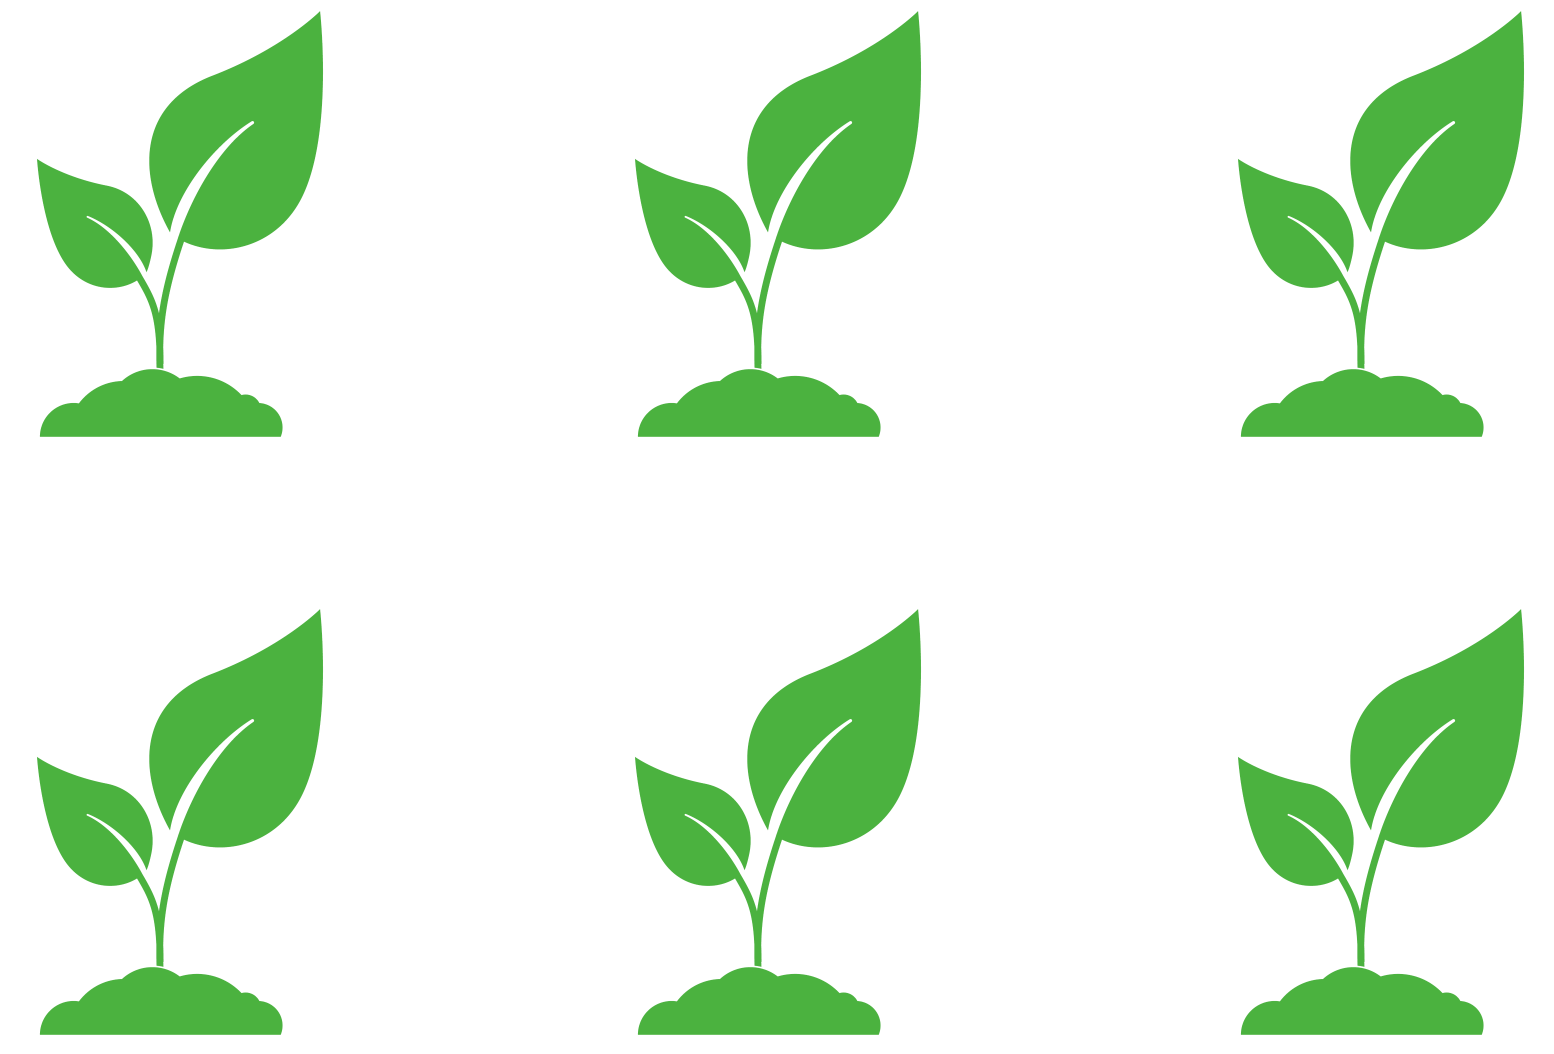 Rectangular planting pattern